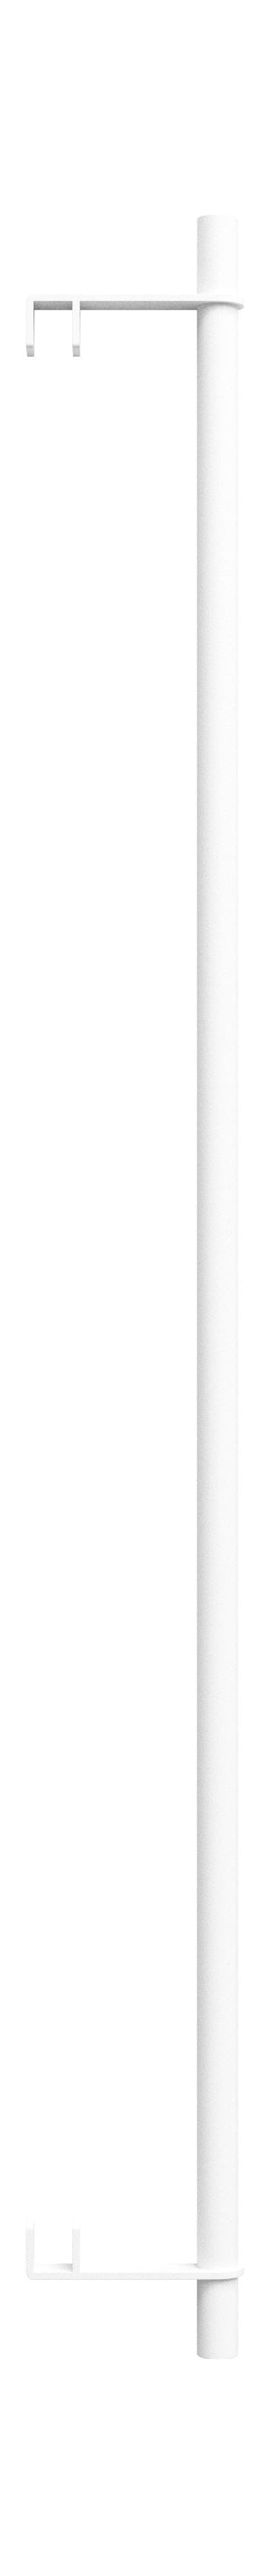 Sistema di scaffalature MOEBE/Scaffali per scaffalature a parete Bar 85 cm, bianco